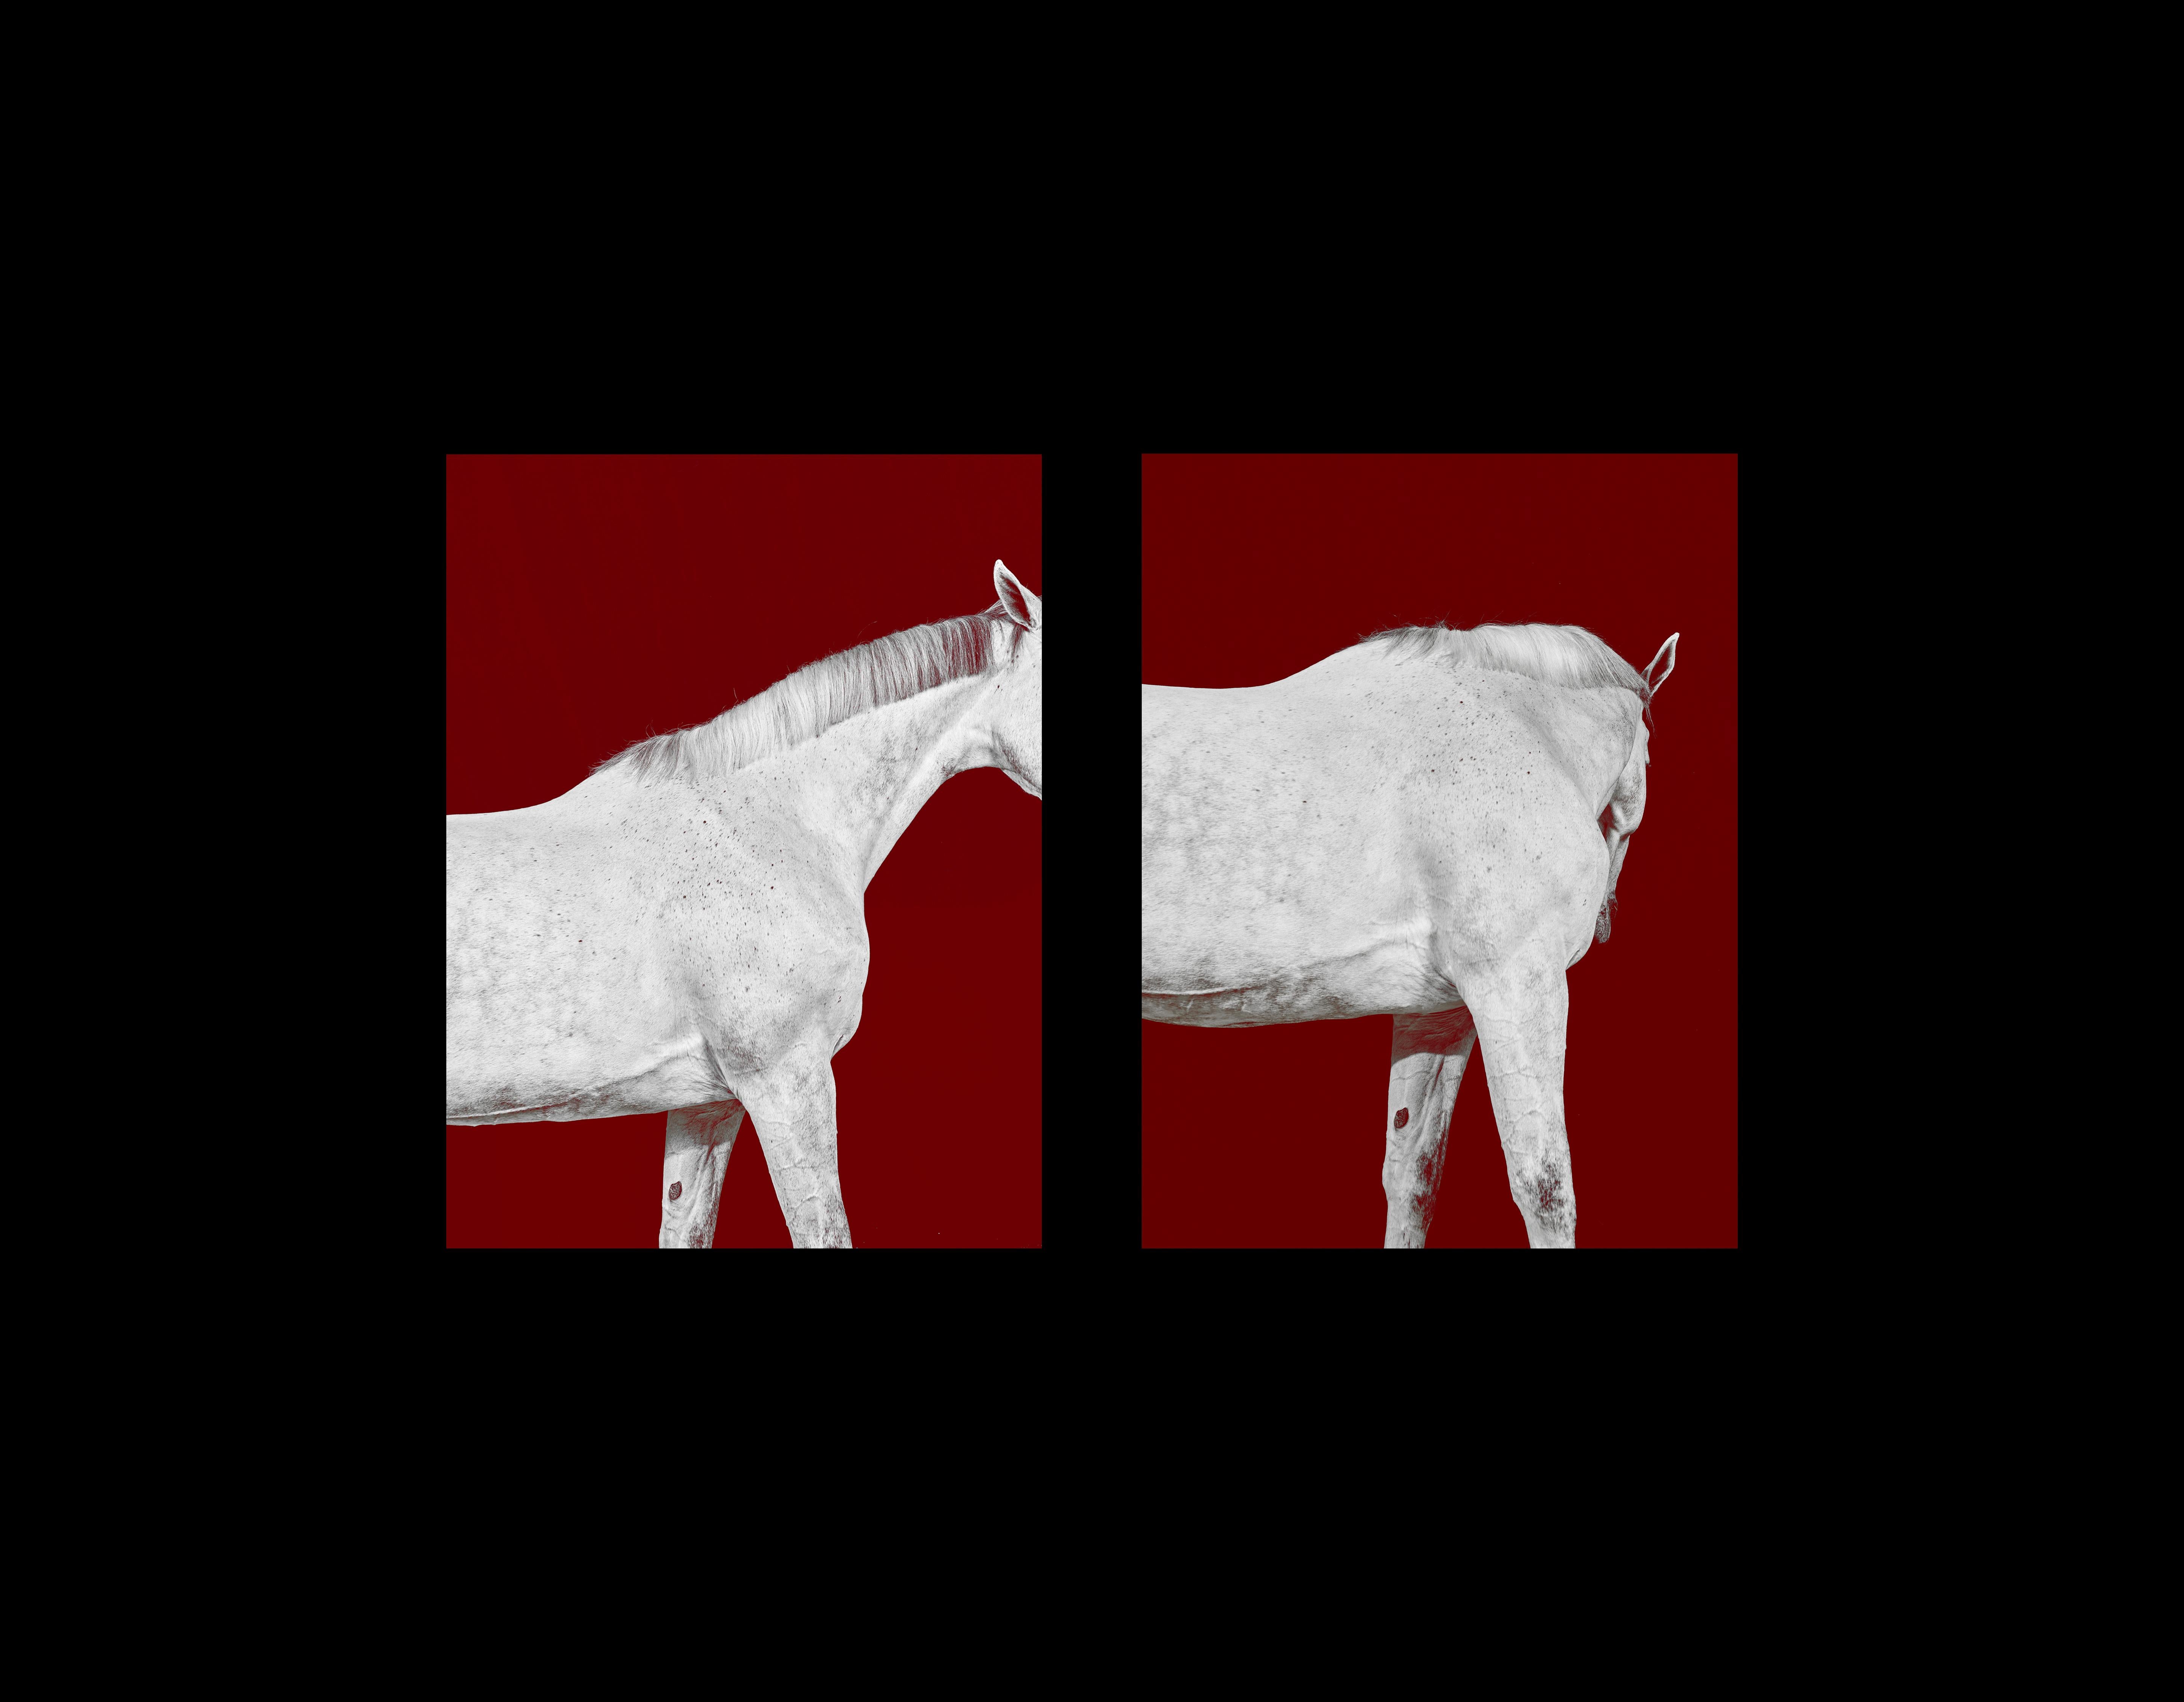 Abstract Photograph Juan Lamarca - Tixie on Red III - Portrait de cheval en couleur en édition limitée, 2016